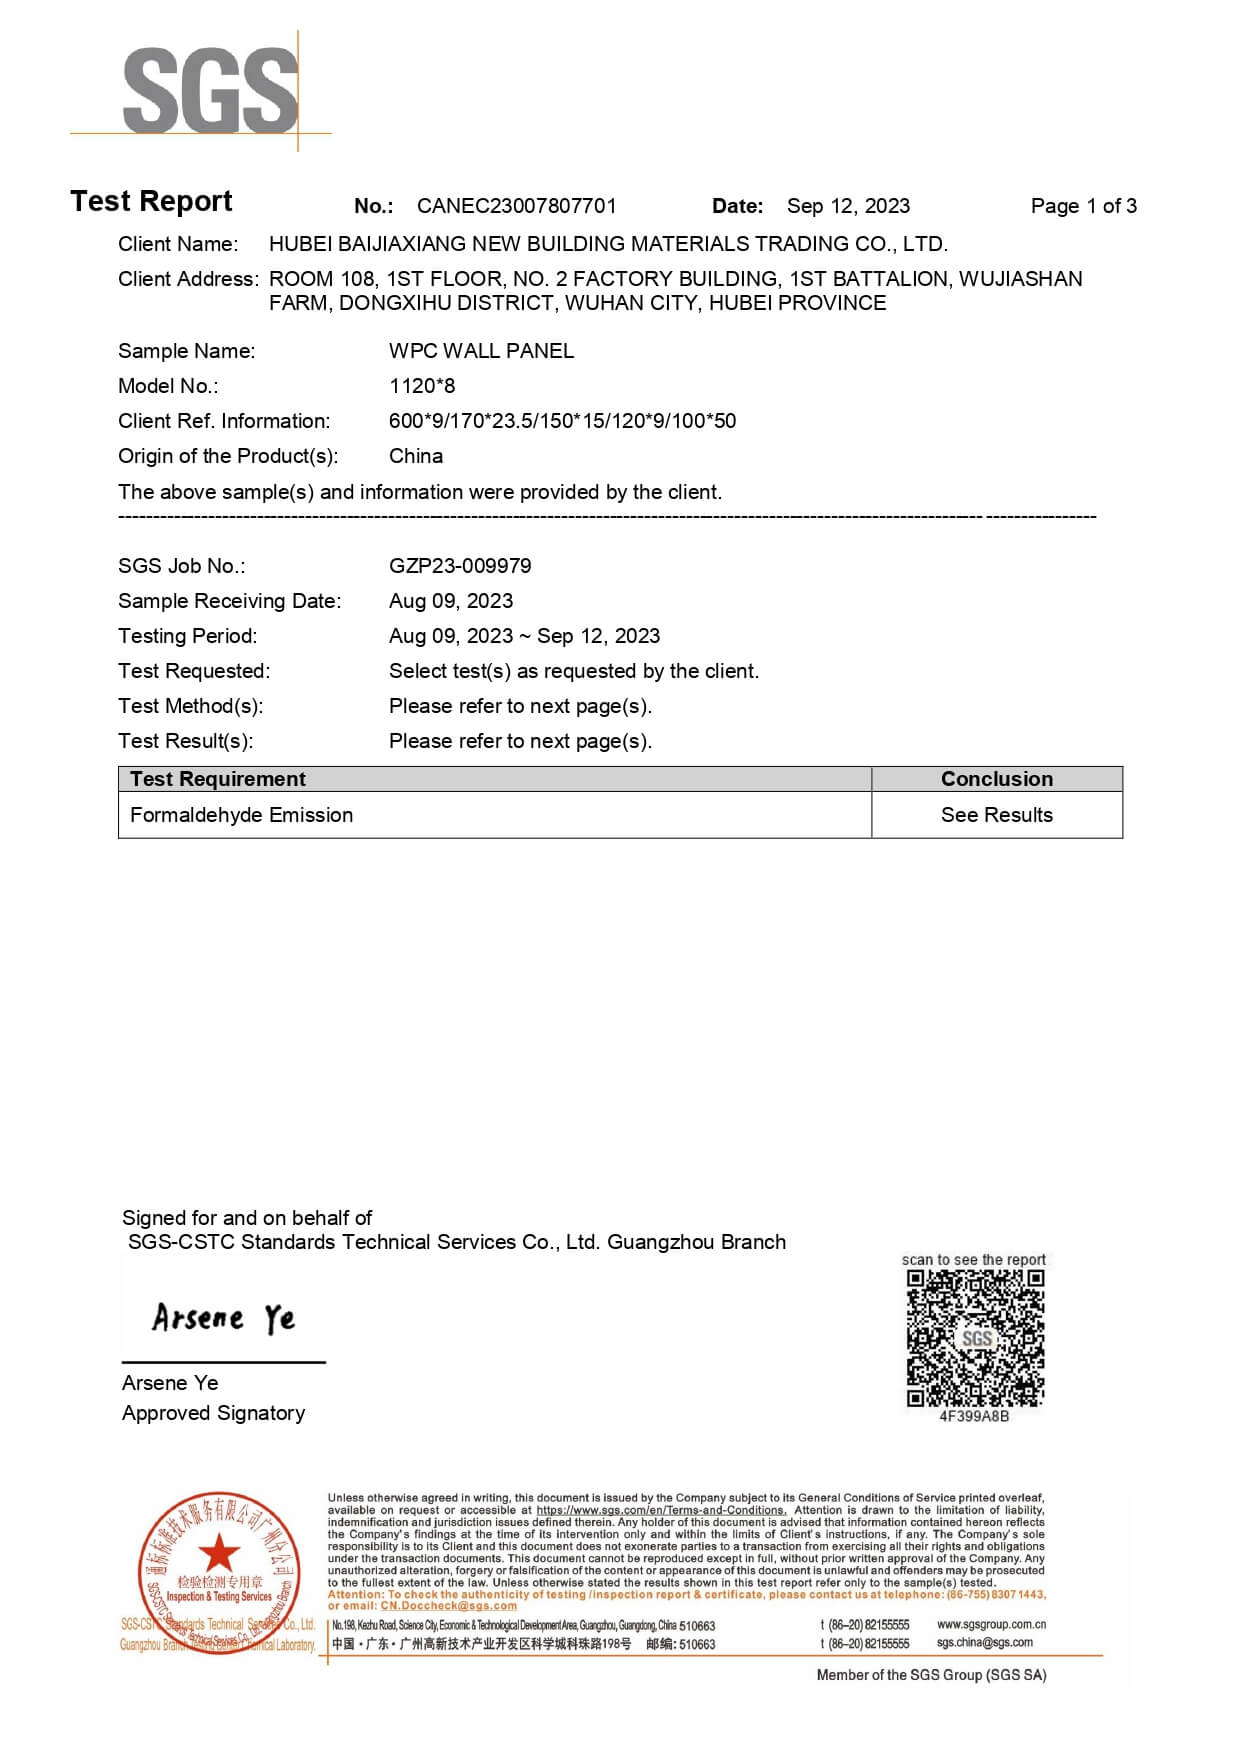 Сертификат проверки панелей на формальдегид